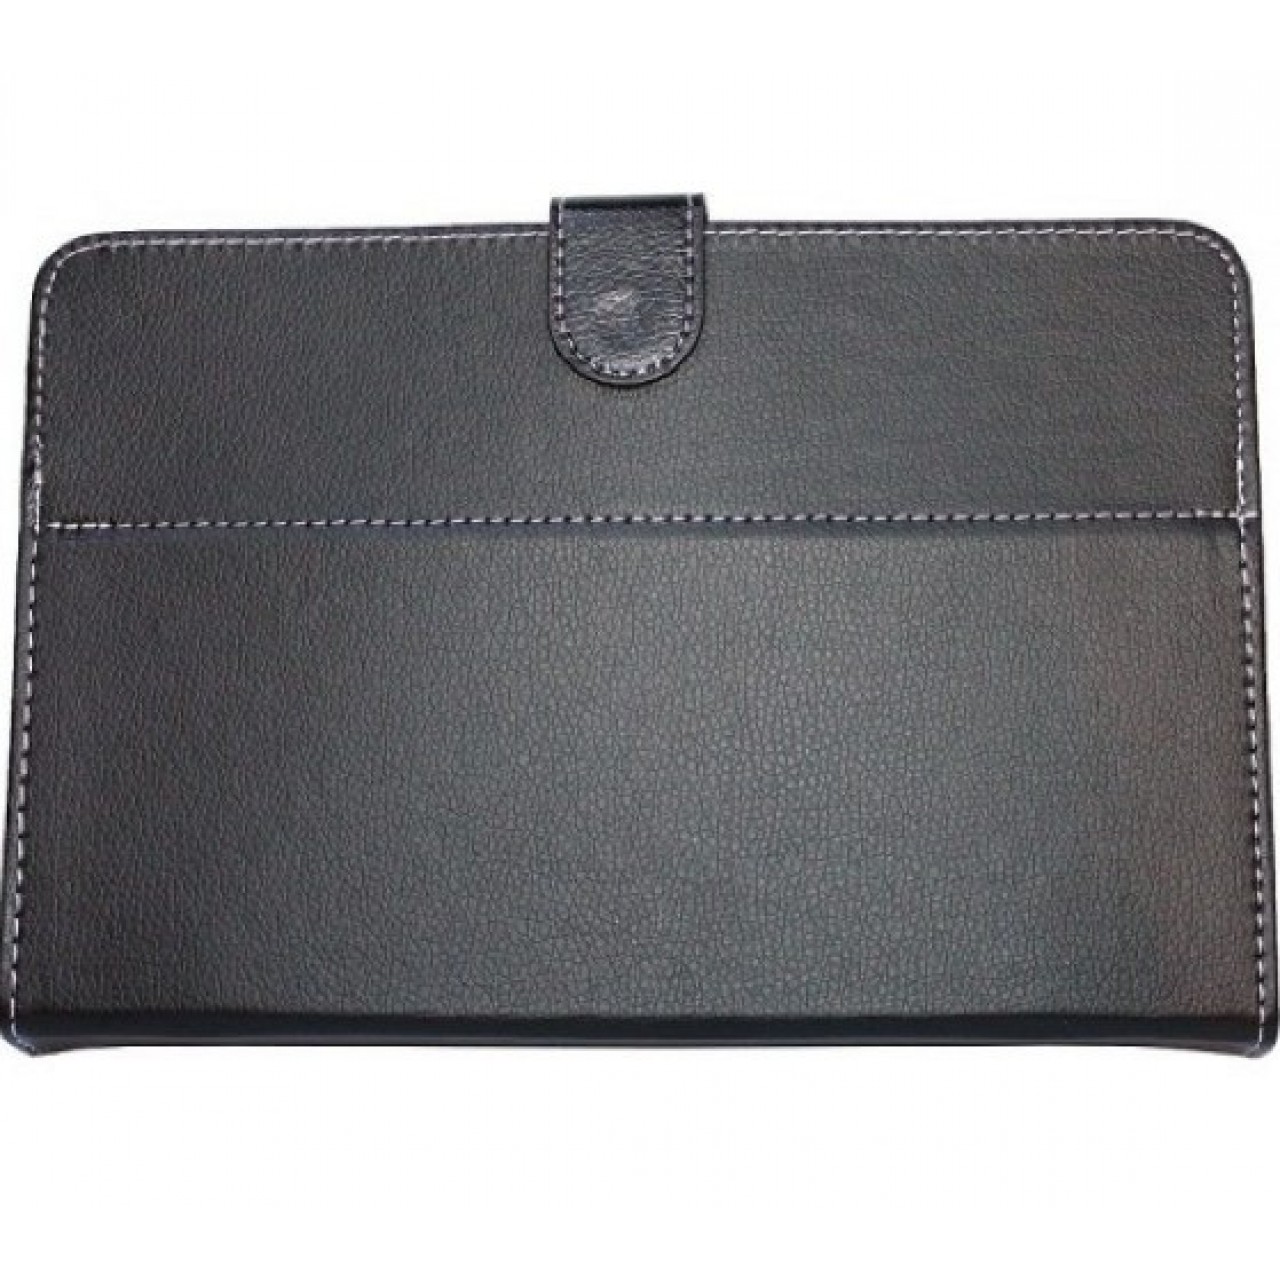 Θήκη Τάμπλετ Universal PU Leather έως 7 ίντσες- 2721 - Μαύρο - OEM